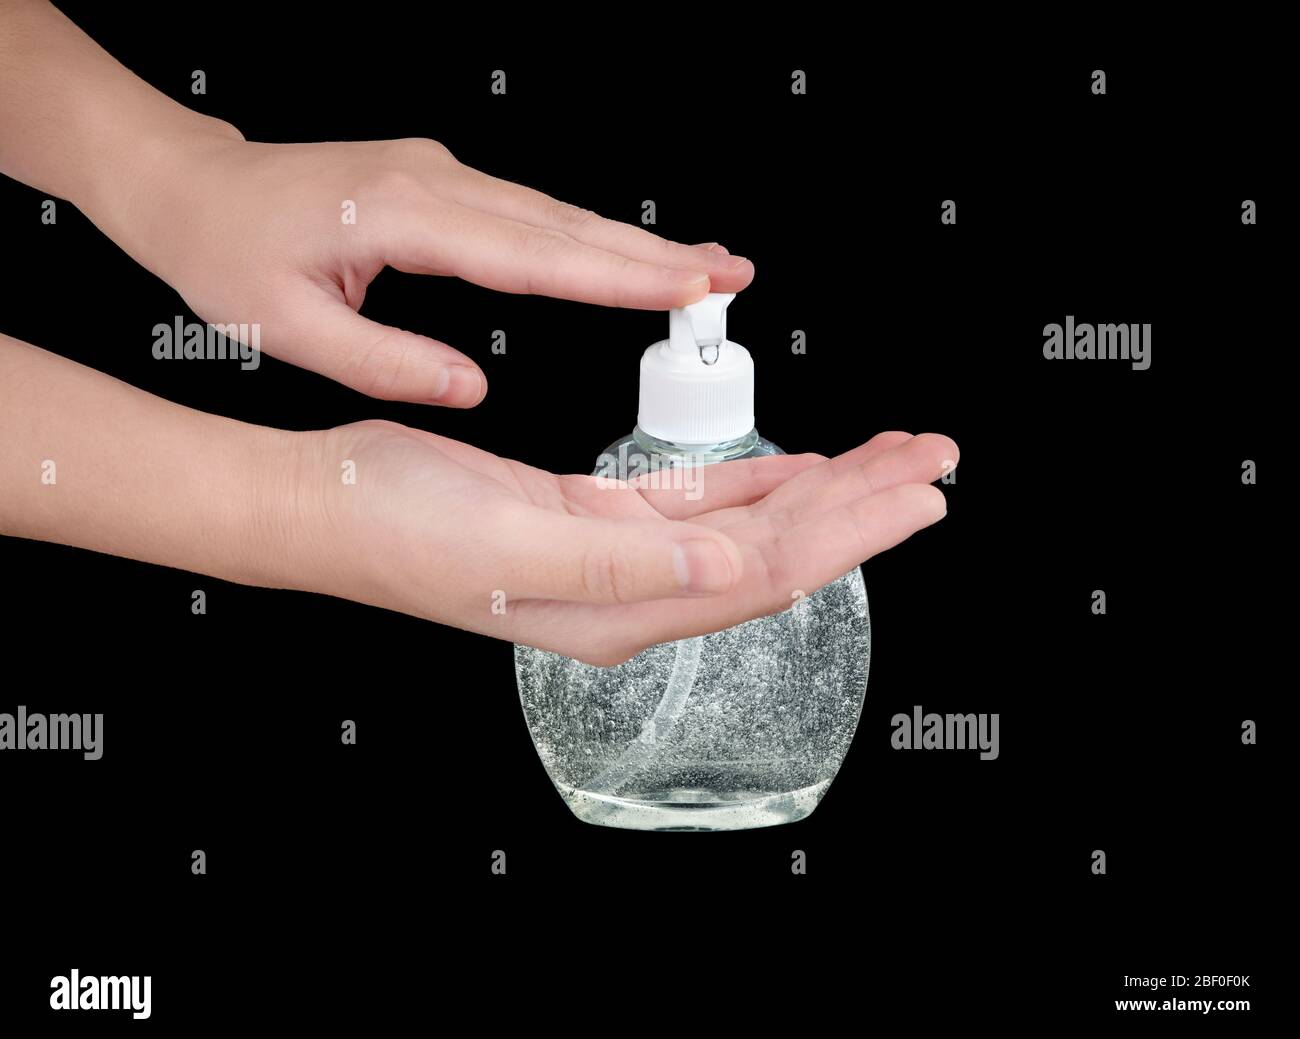 Le mani femminili premono una goccia di igienizzante a base di alcol fuori da un dispenser di sapone liquido per applicarlo. Mezzo di disinfezione e igiene antibatterica. Foto Stock